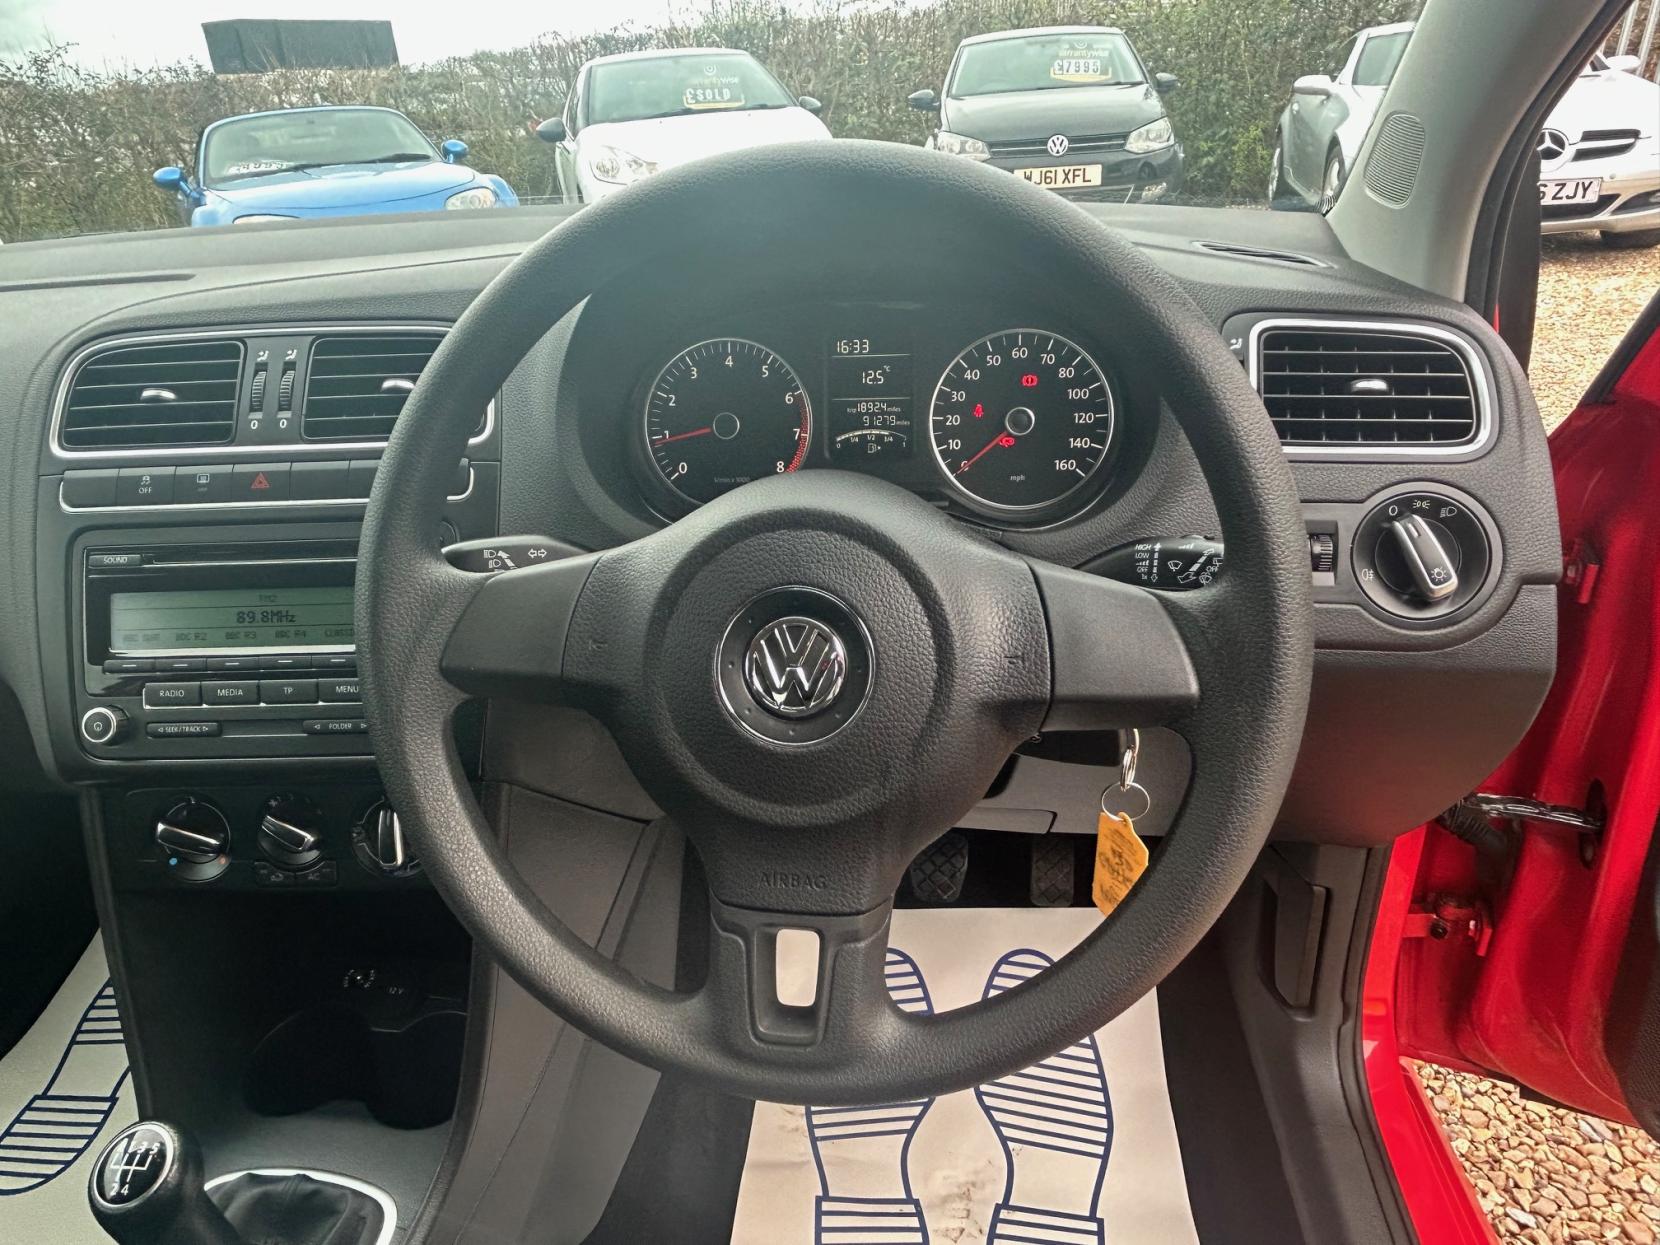 Volkswagen Polo 1.2 SE Hatchback 3dr Petrol Manual Euro 5 (60 ps)